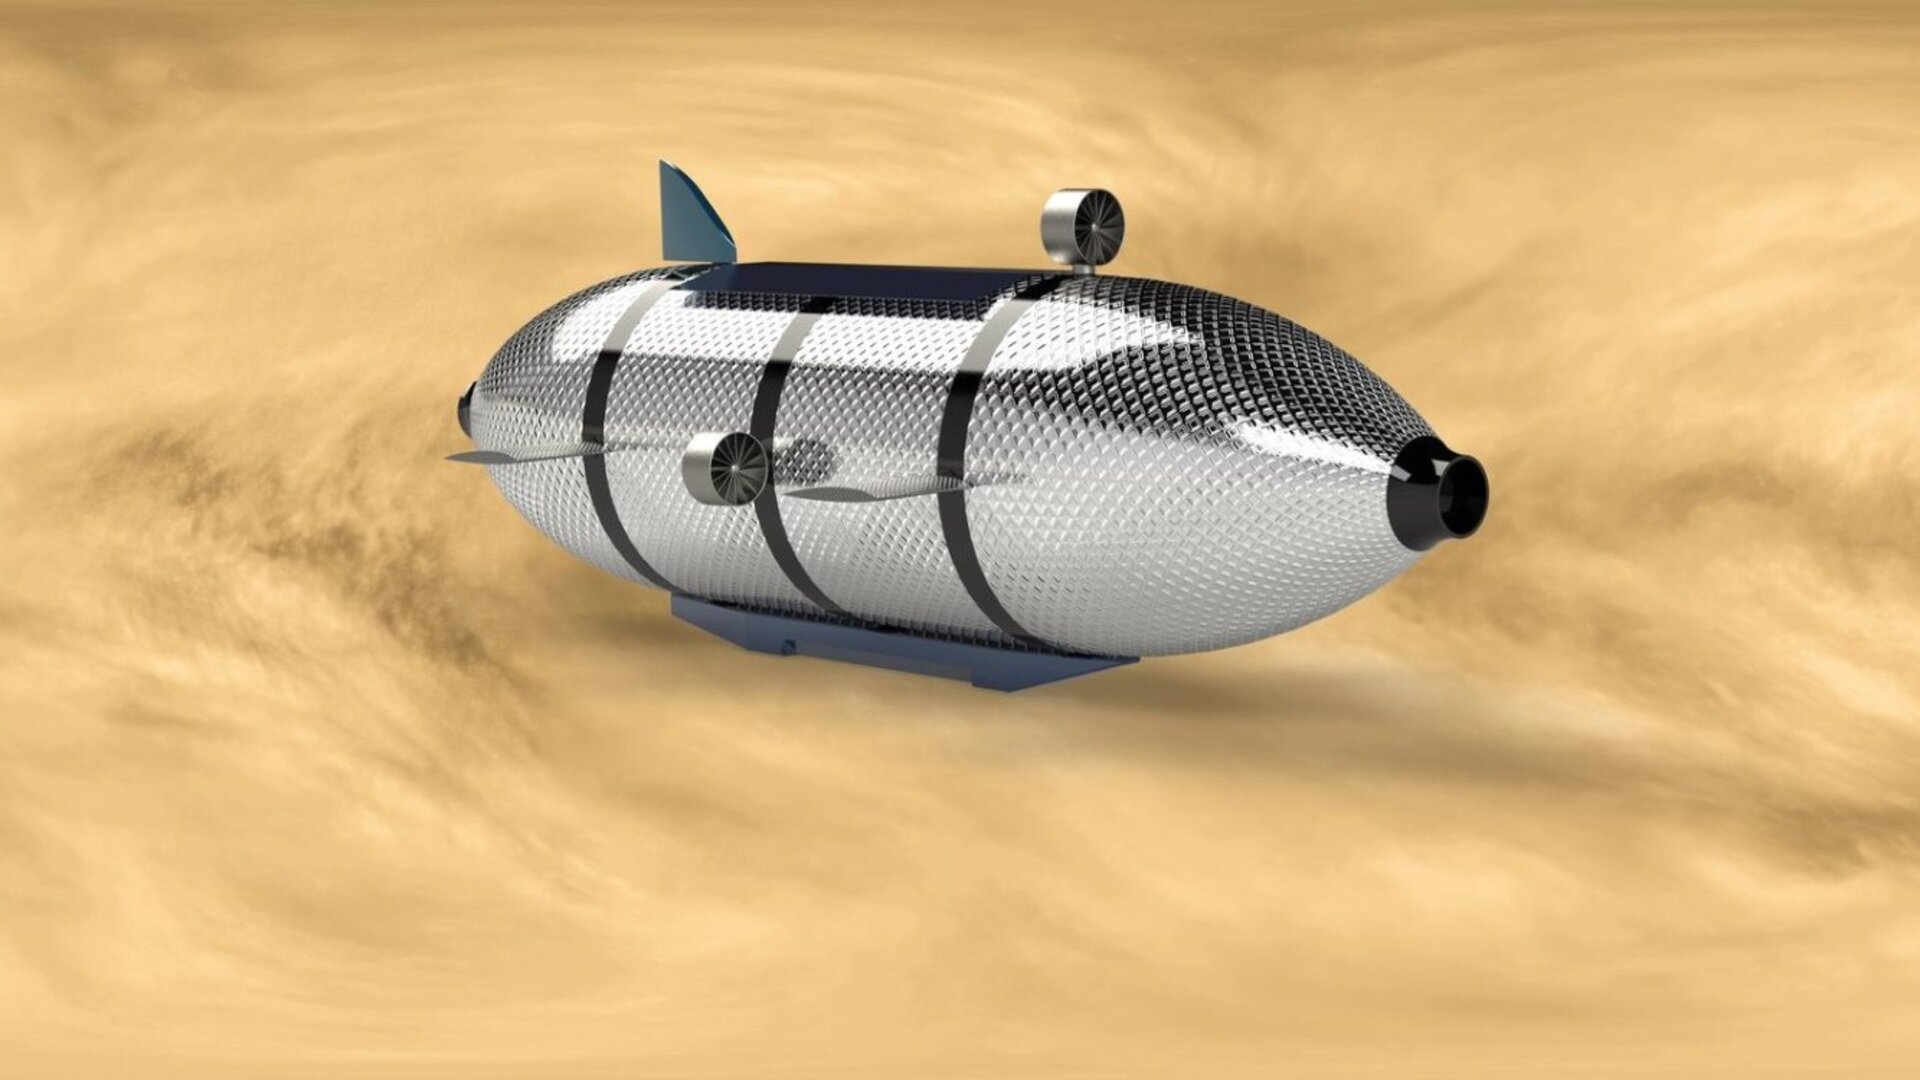 Vacuum airship to explore Venus' atmosphere